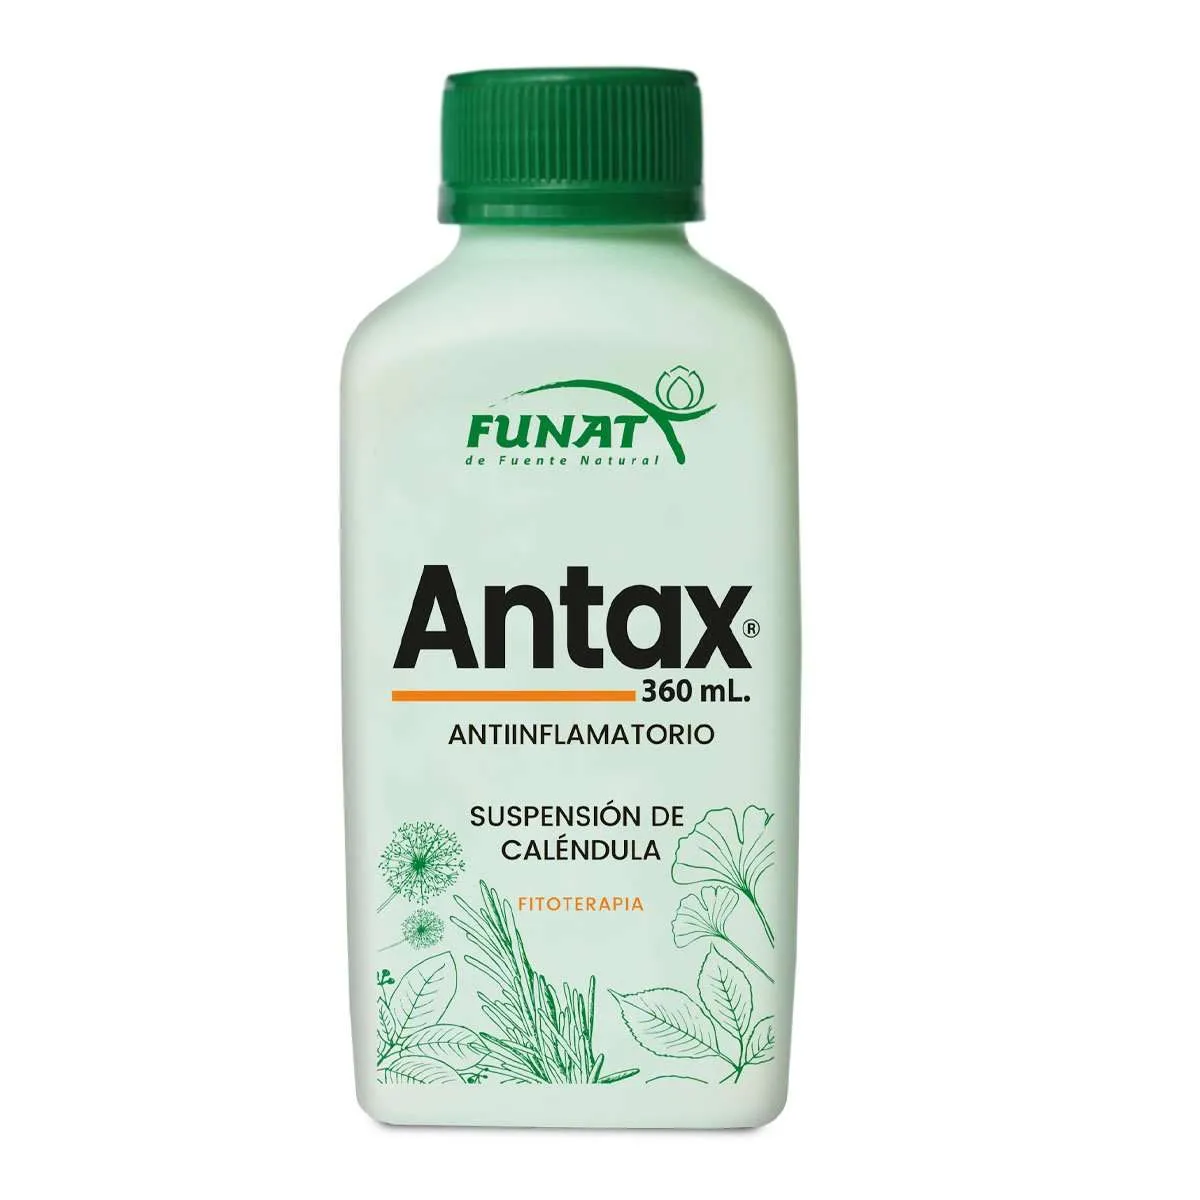 Antax 360 ml - Frente del empaque - Funat